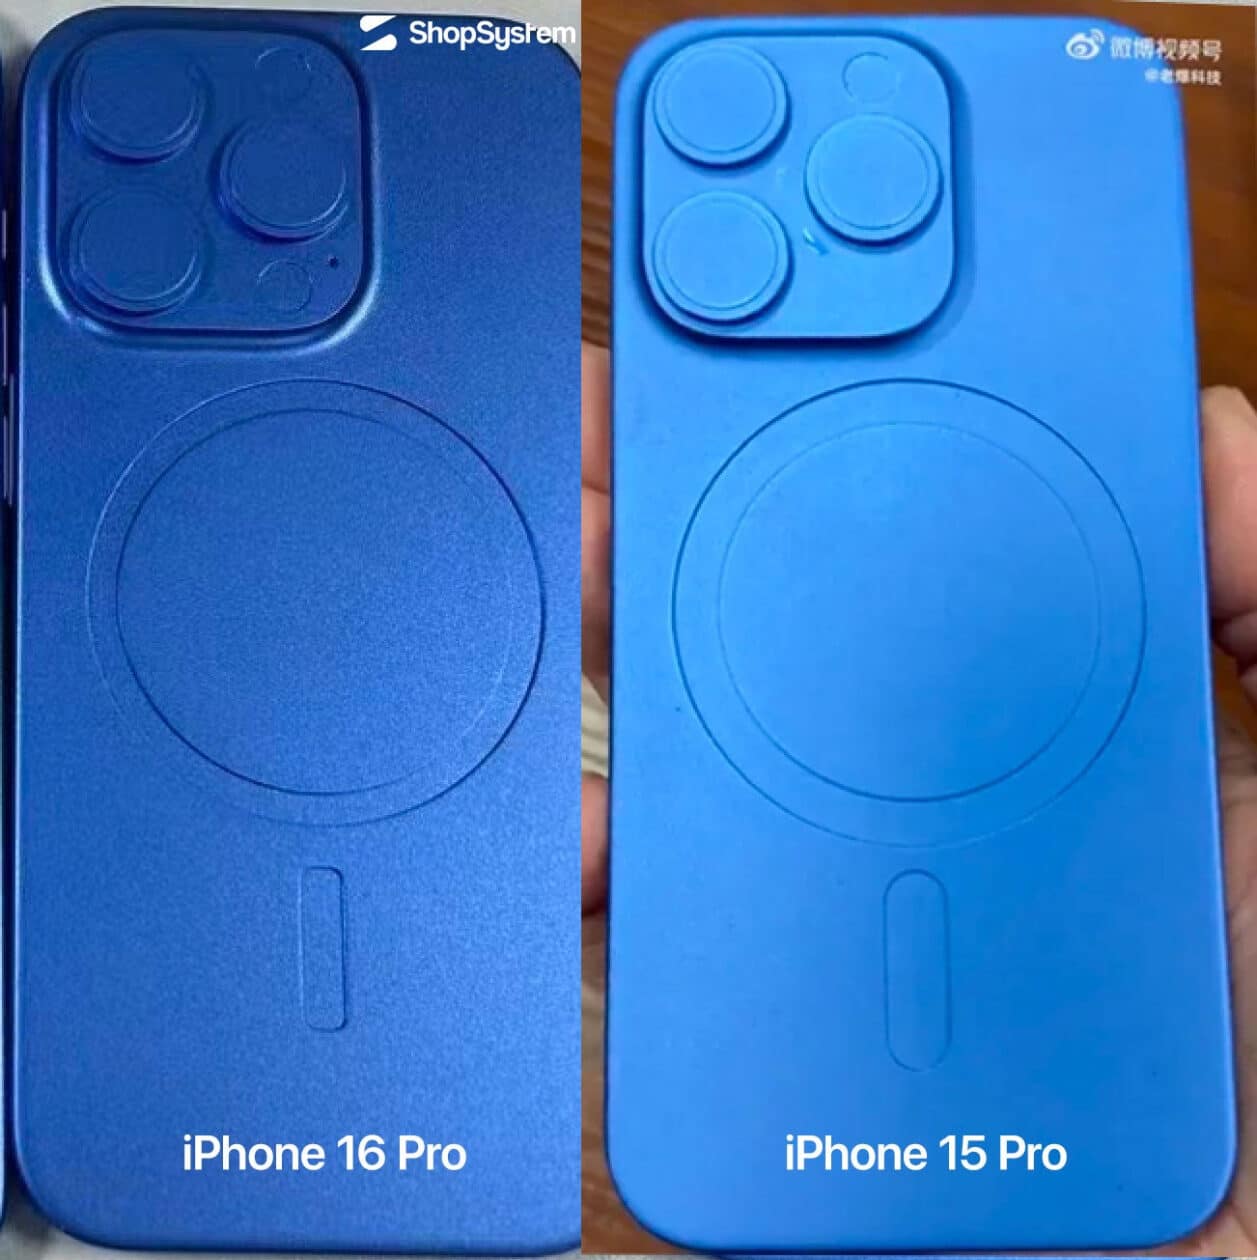 Comparação dos ímãs MagSafe do "iPhone 16 Pro" e do "iPhone 15 Pro"